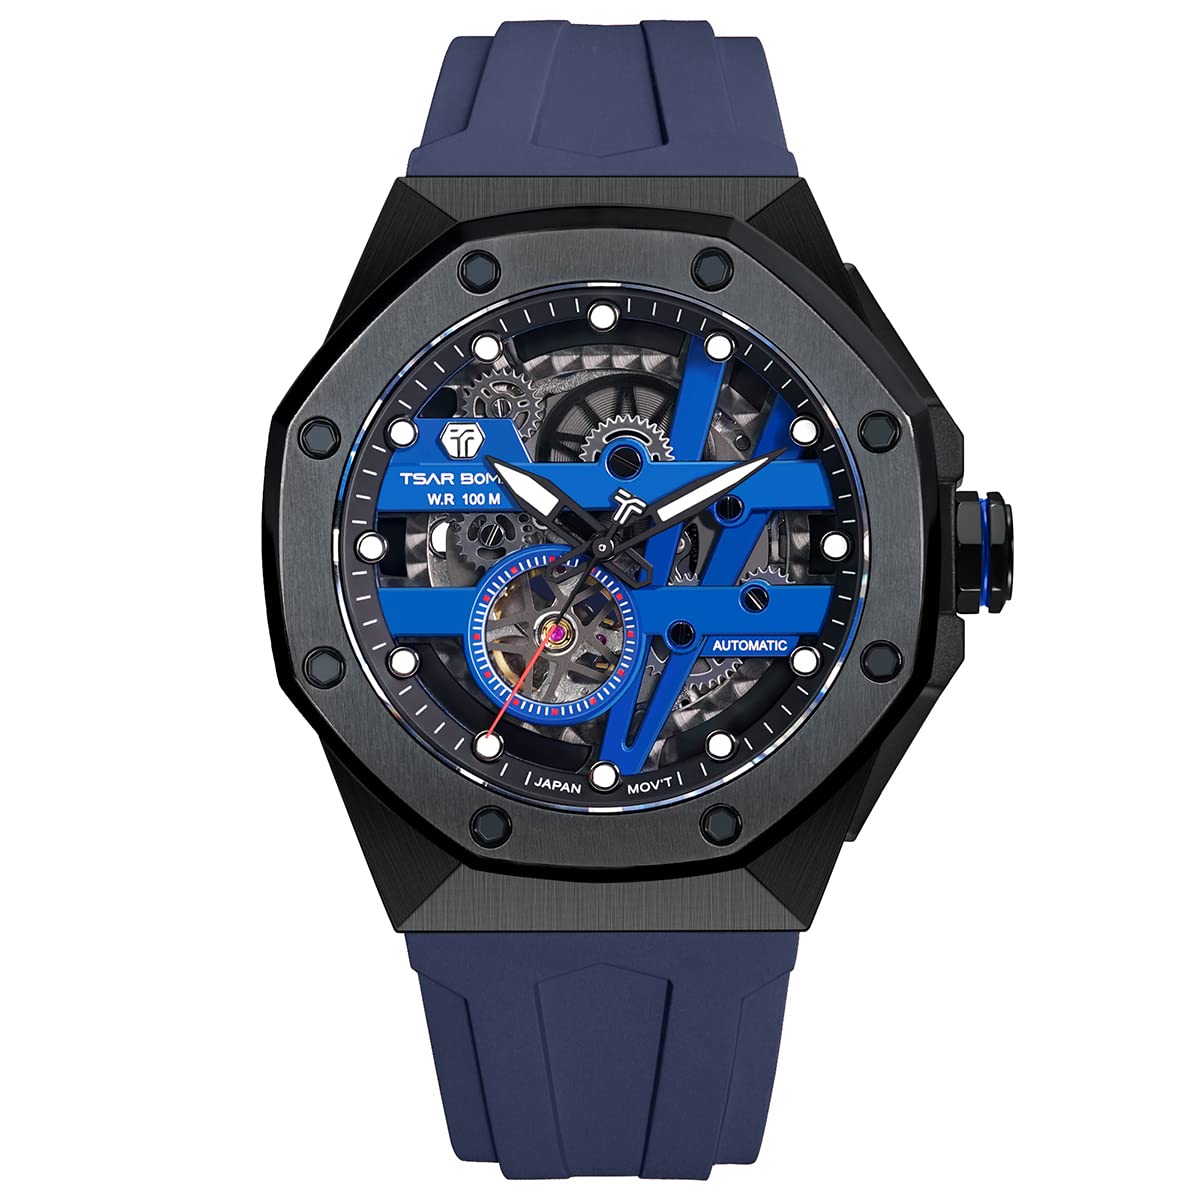 TSAR BOMBA Mens Automatic Watch - Japanese Movement - Sapphire Glass - 100m Waterproof - Luxury Fluororubber Strap -Gifts fo